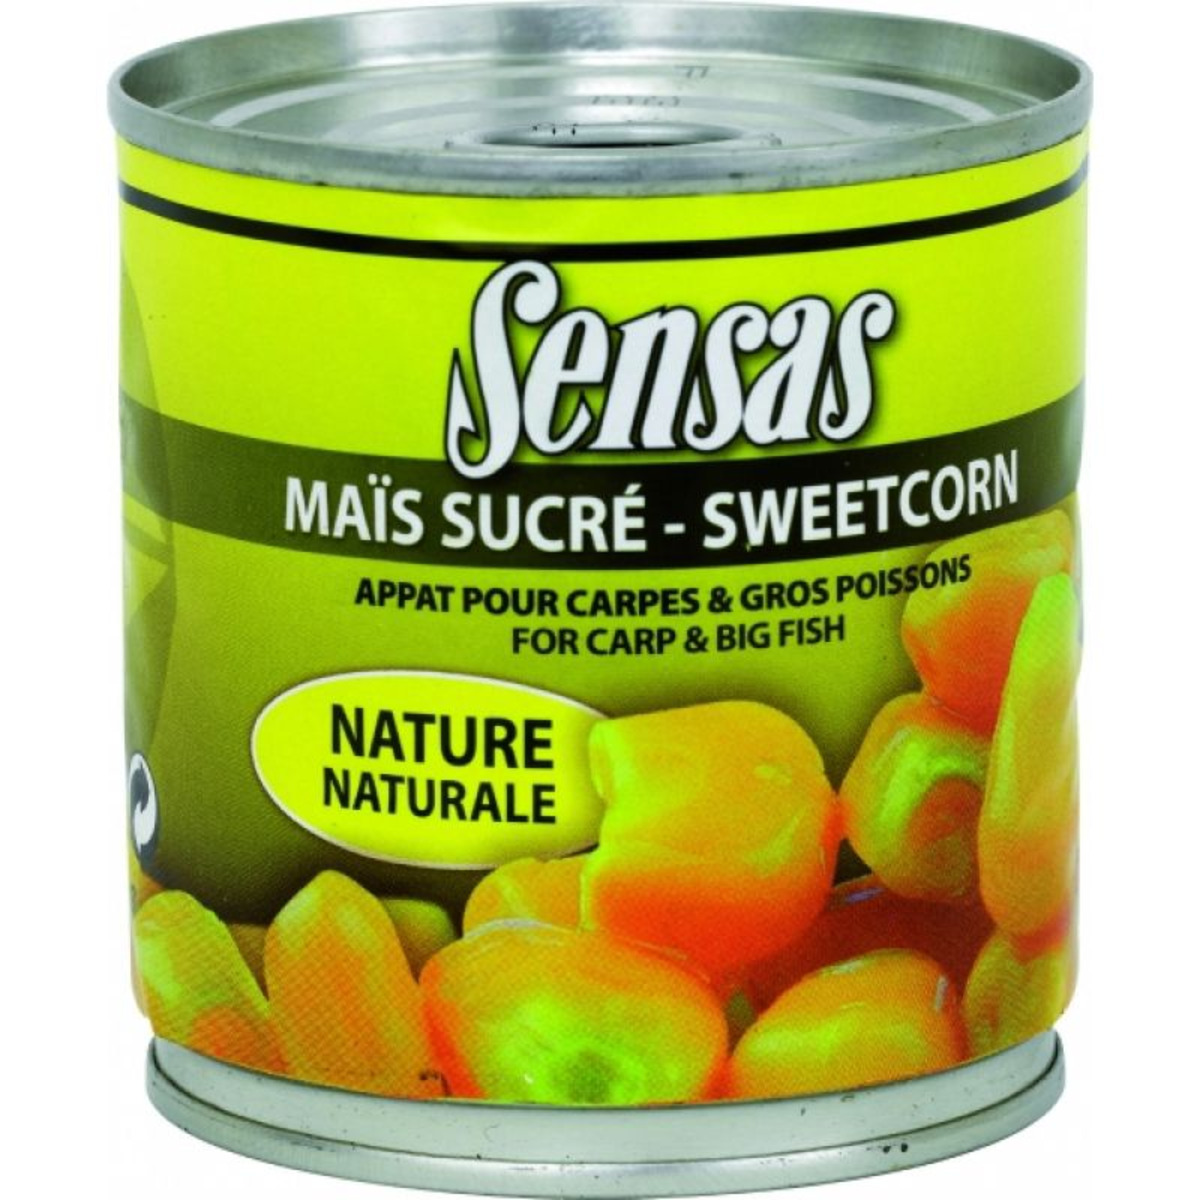 Sensas Sweetcorn - 138 g - Natural